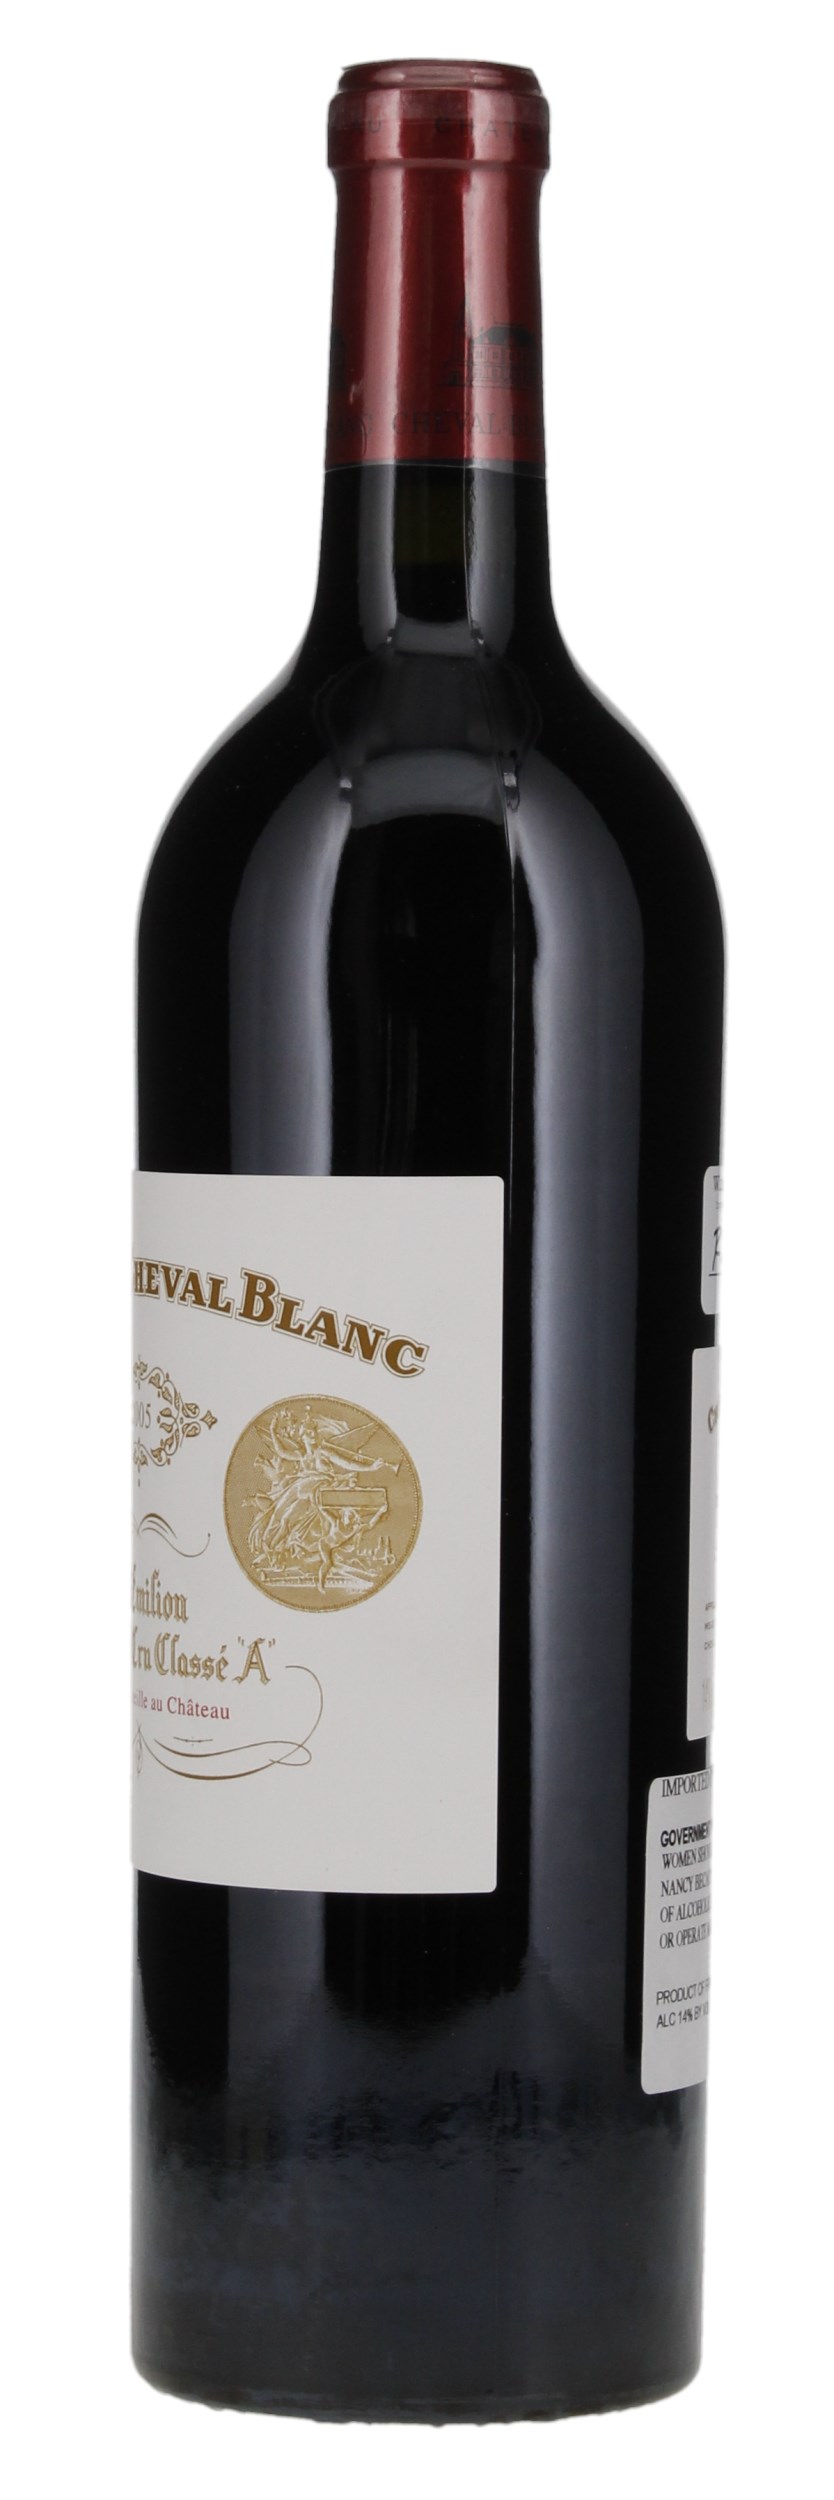 2005 Château Cheval-Blanc, 750ml